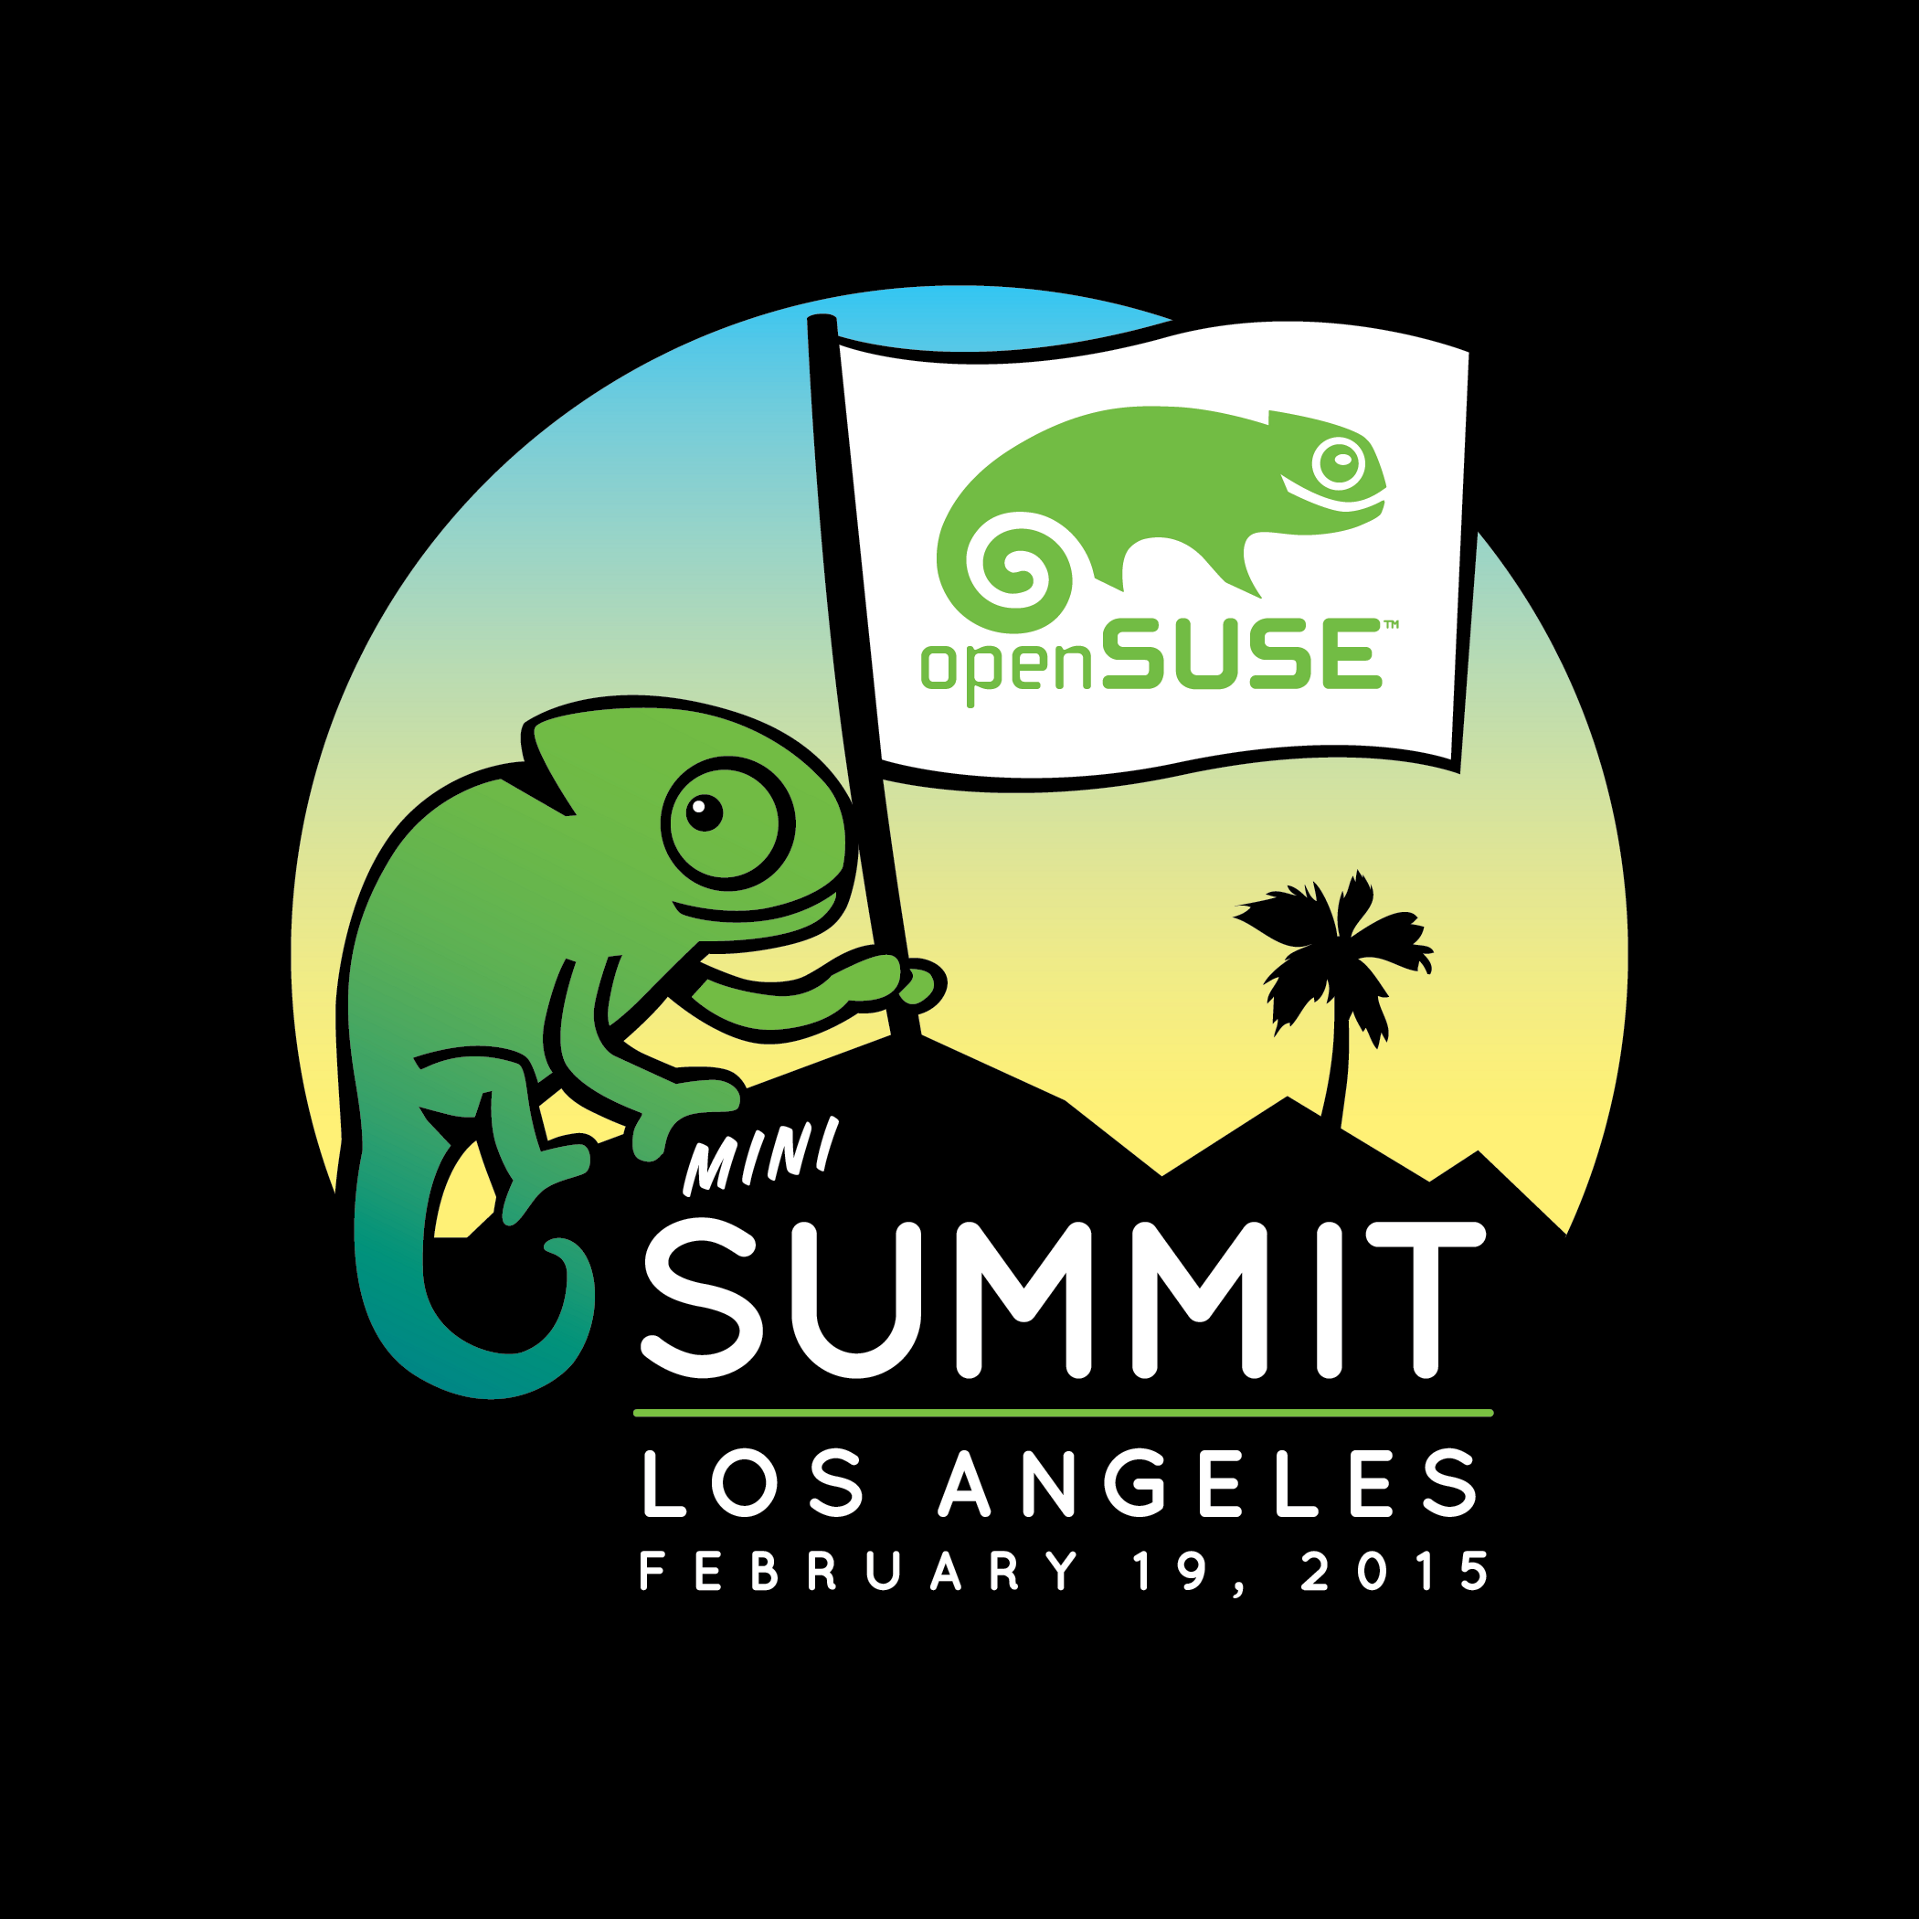 openSUSE Mini Summit Los Angeles Logo (2015)